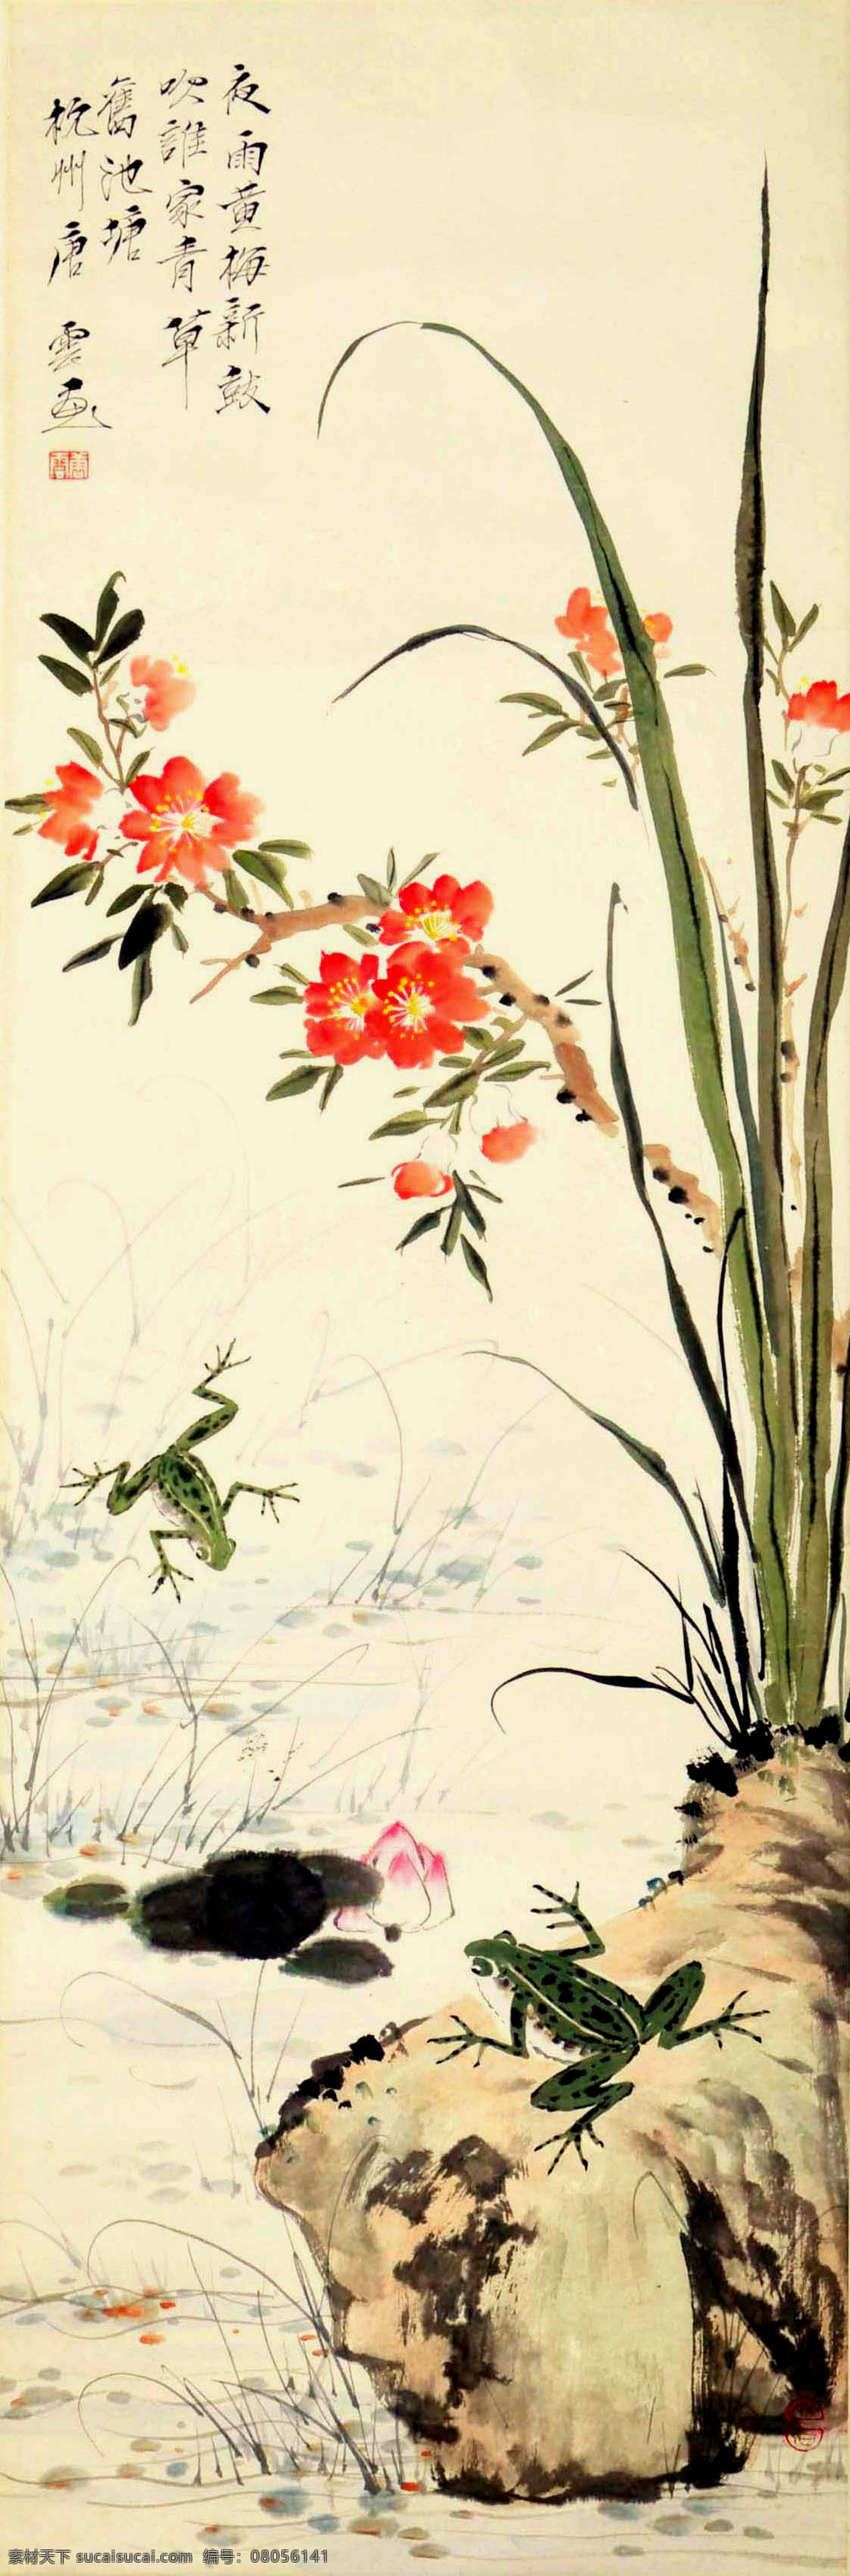 唐云 花鸟 写意 水墨画 国画 中国画 传统画 名家 绘画 艺术 文化艺术 绘画书法